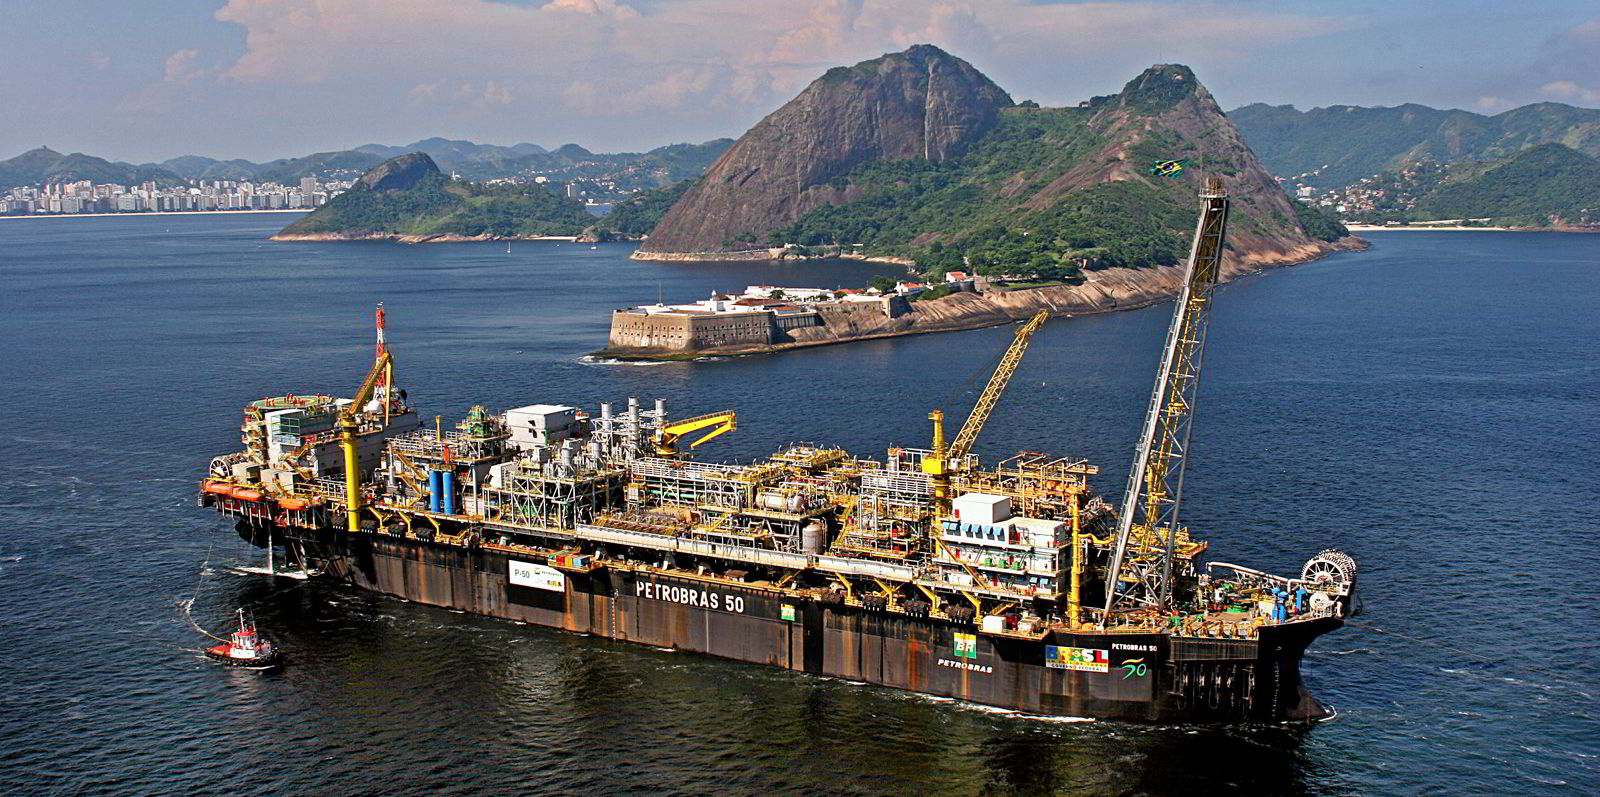 O contrato prevê o fornecimento de serviços de manutenção offshore na plataforma da petroleira ao longo do período de permanência. A Actemium contribuirá para a continuidade da campanha da PRIO com o FPSO P-50 na Bacia de Campos.